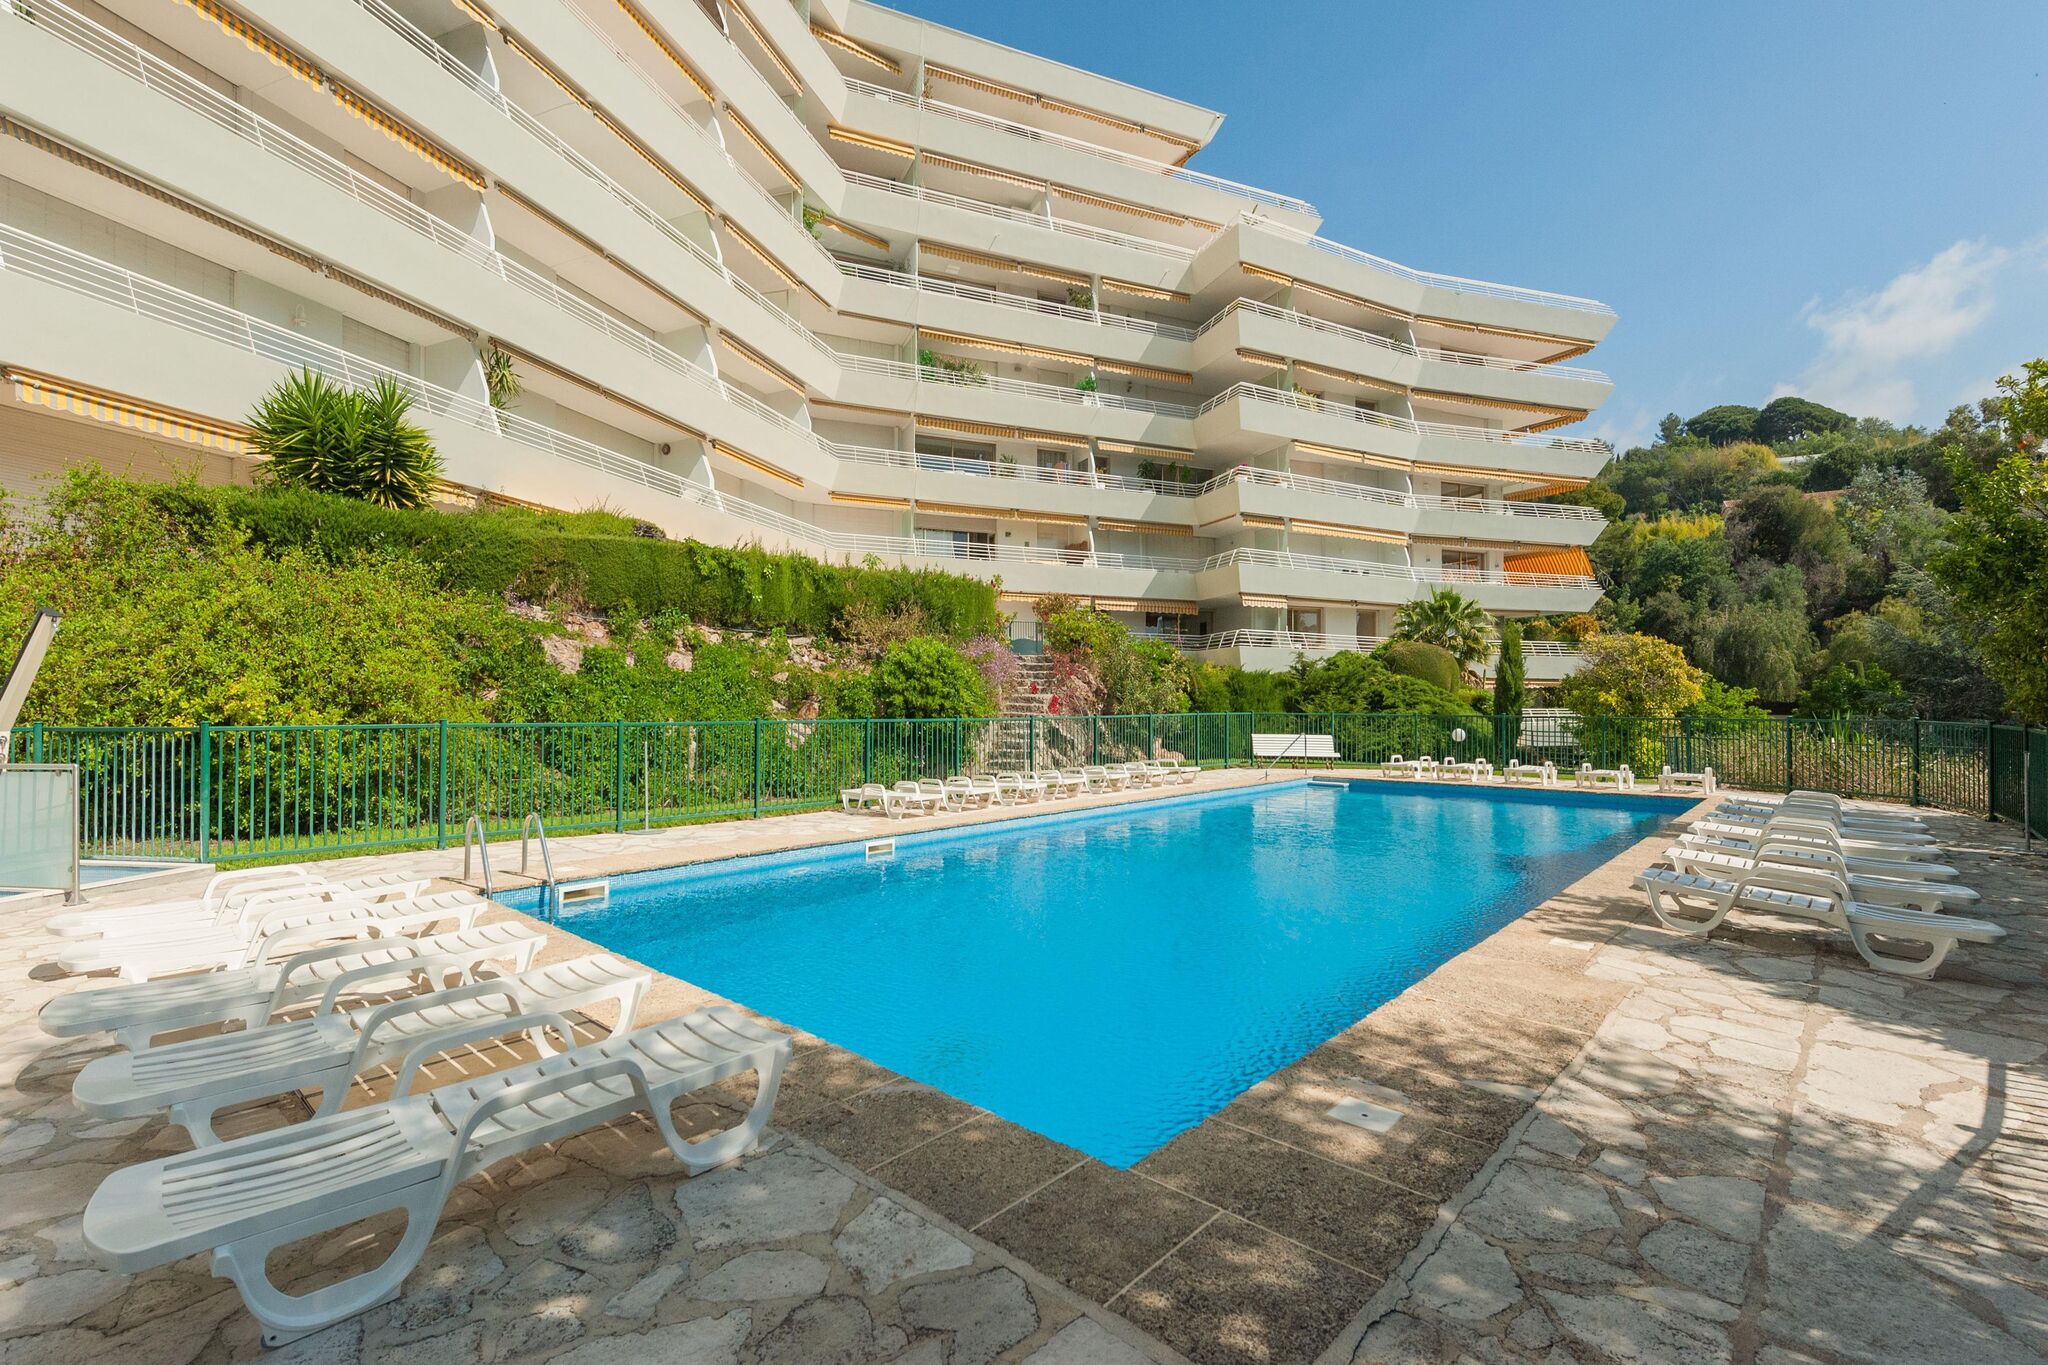 Appartement pittoresque à Cannes avec terrasse privée